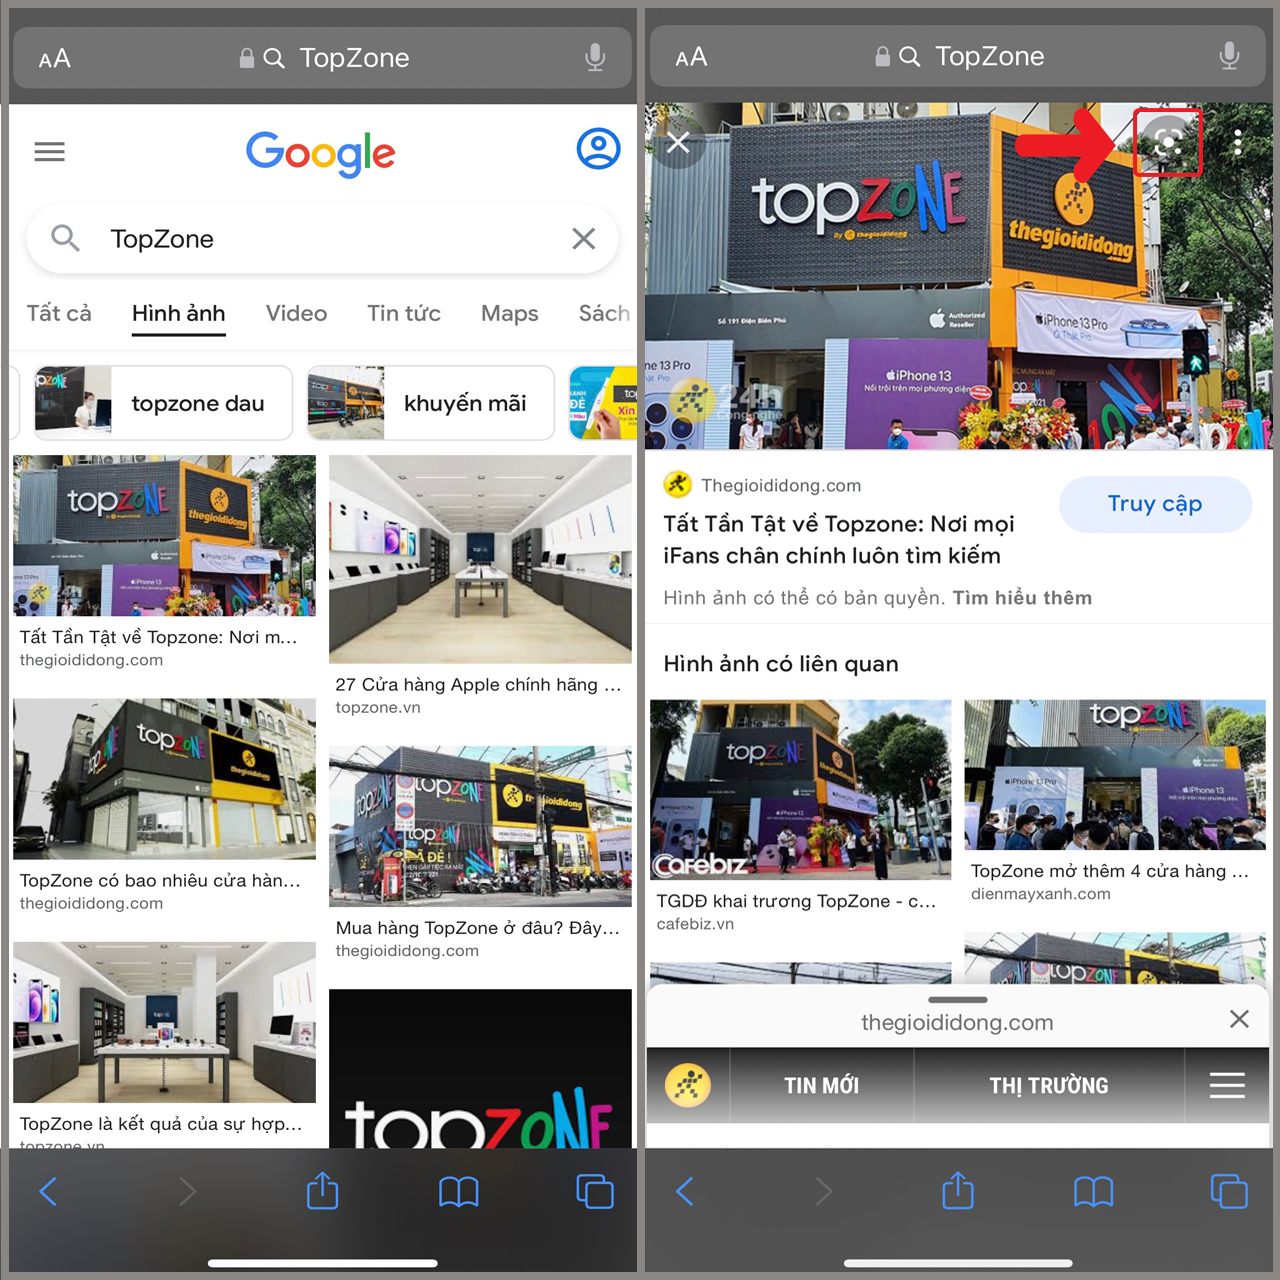 Cách tắt tính năng Tìm kiếm hình ảnh bằng Google Ống kính trong Chrome   Cộng đồng Designer Việt Nam